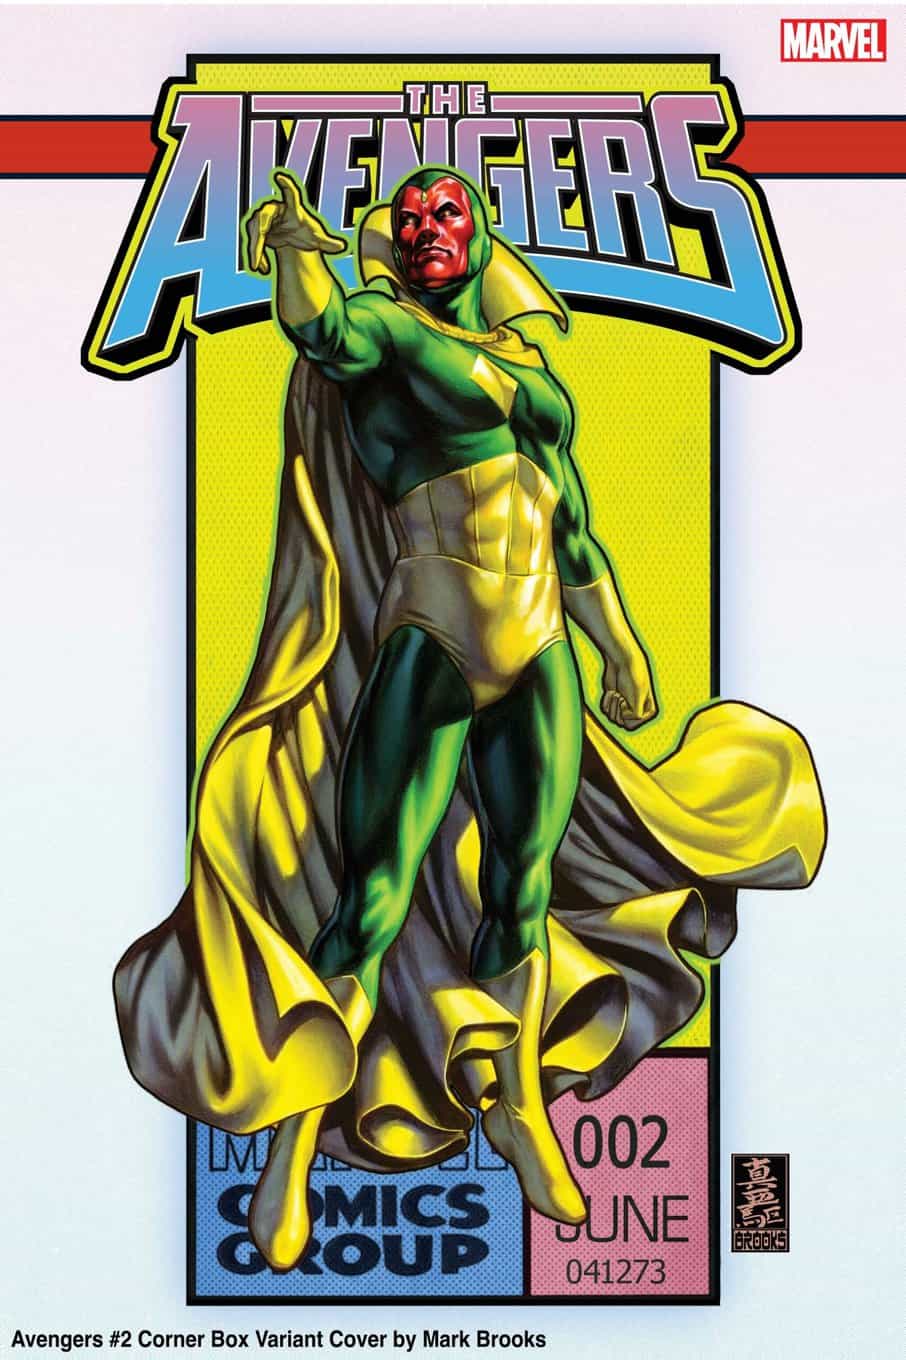 Avengers #2 Mark Brooks Avengers 60th Anniversary Corner Box variant cover